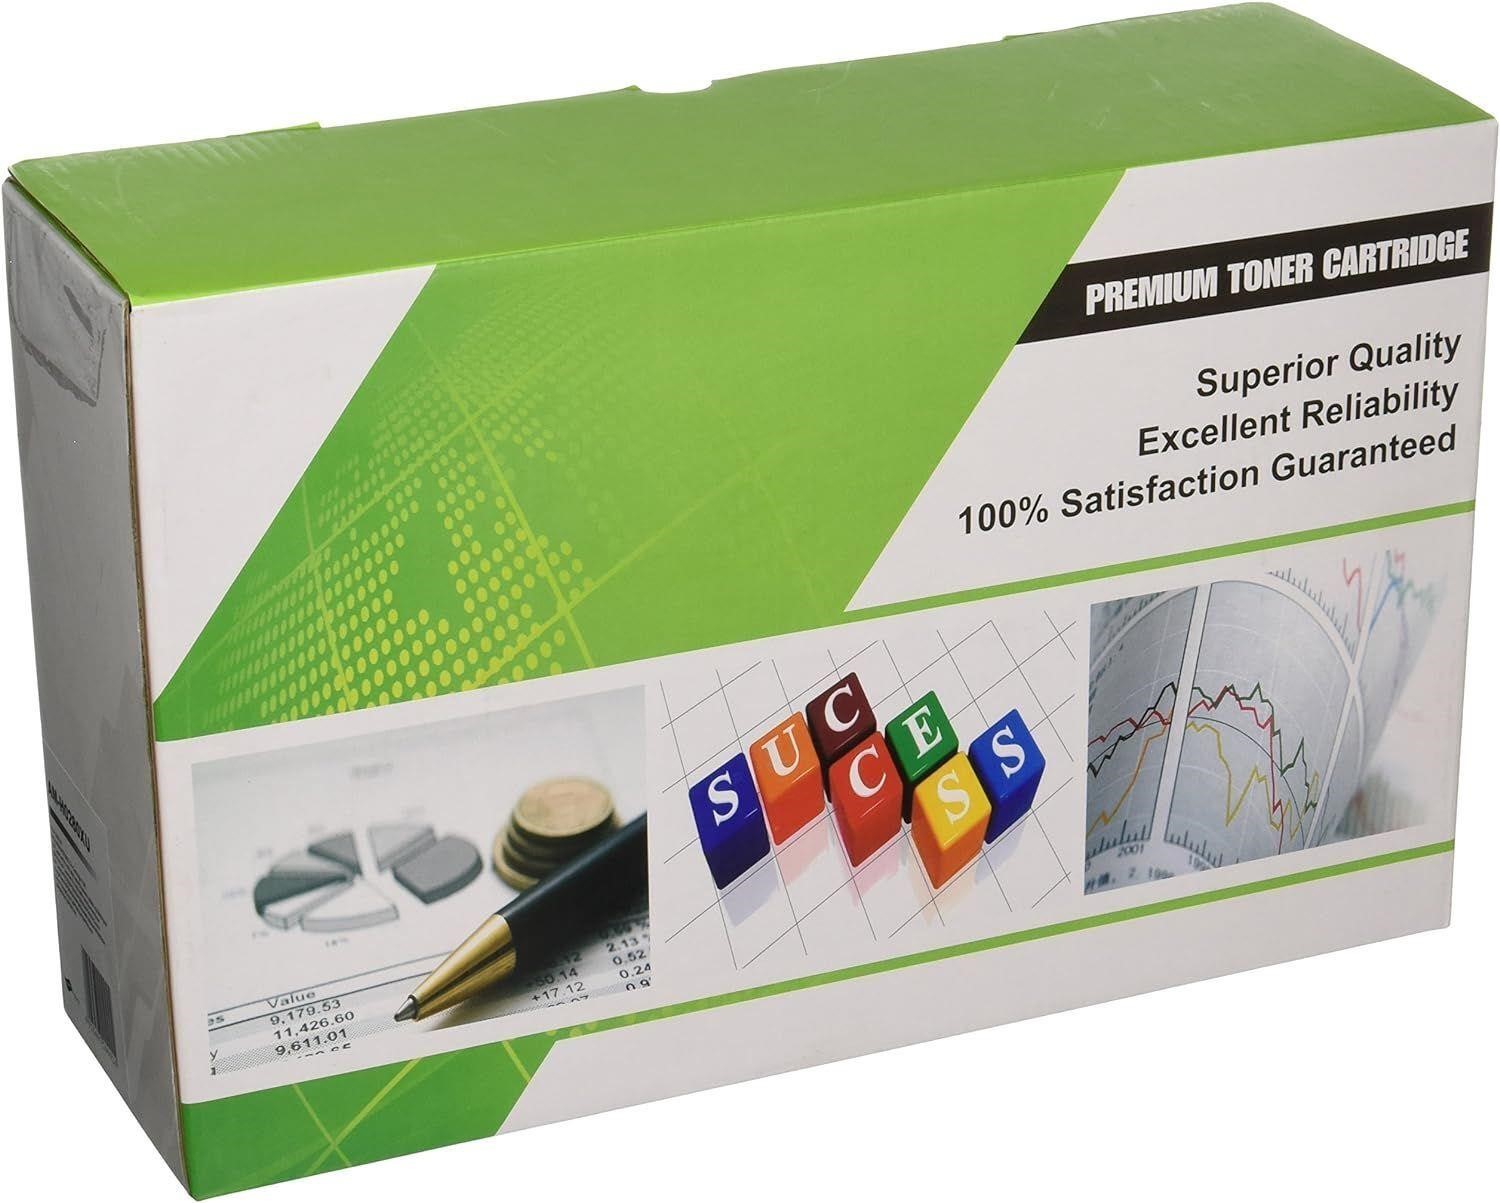 Premium Toner Cartridge 2 Pack